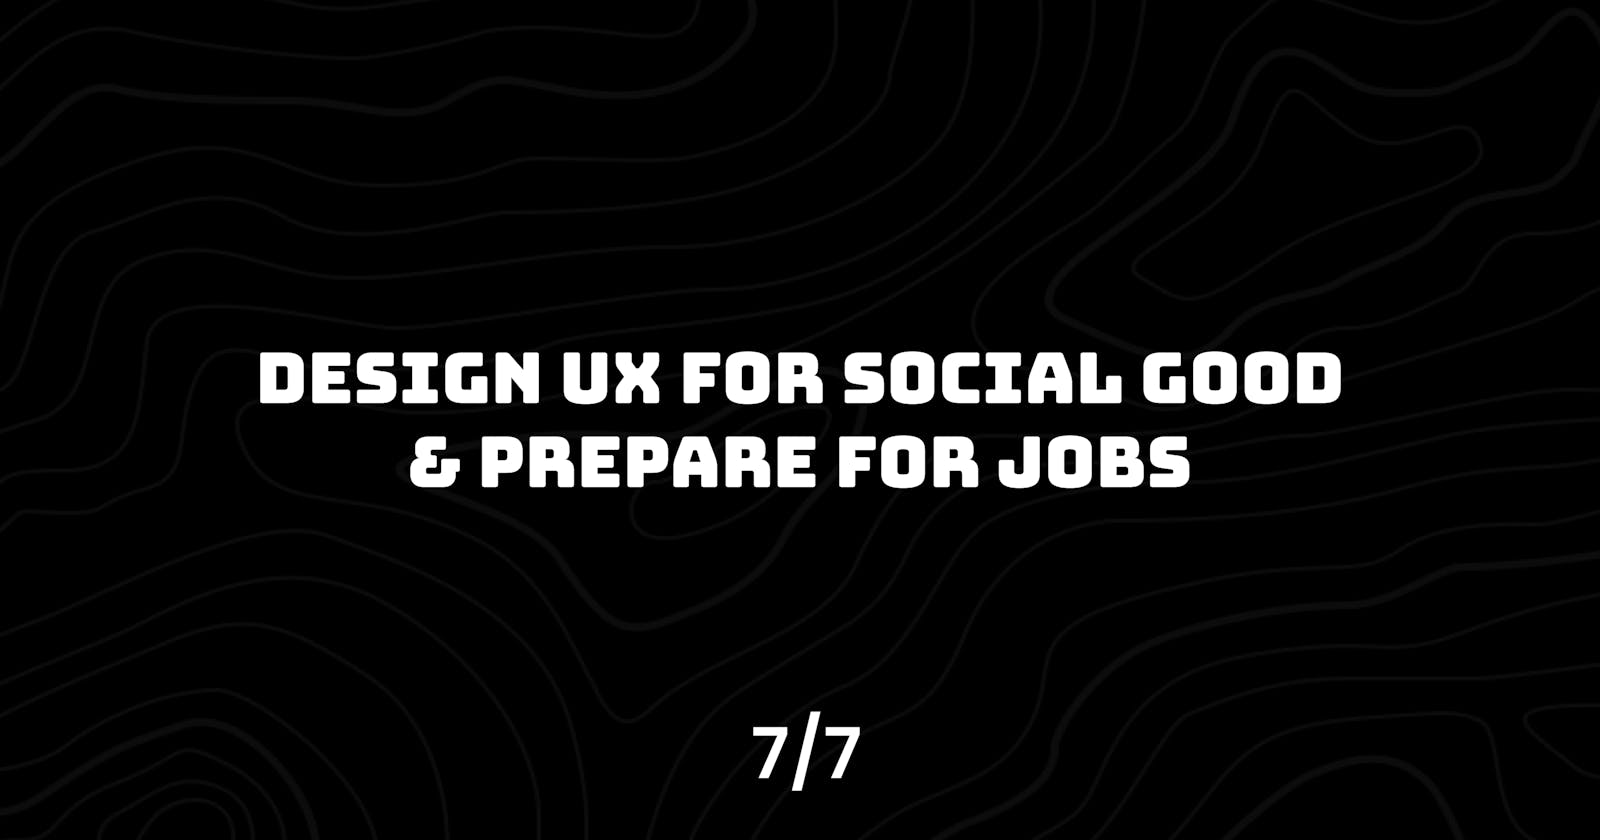 Design UX for Social Good & Prepare for Jobs